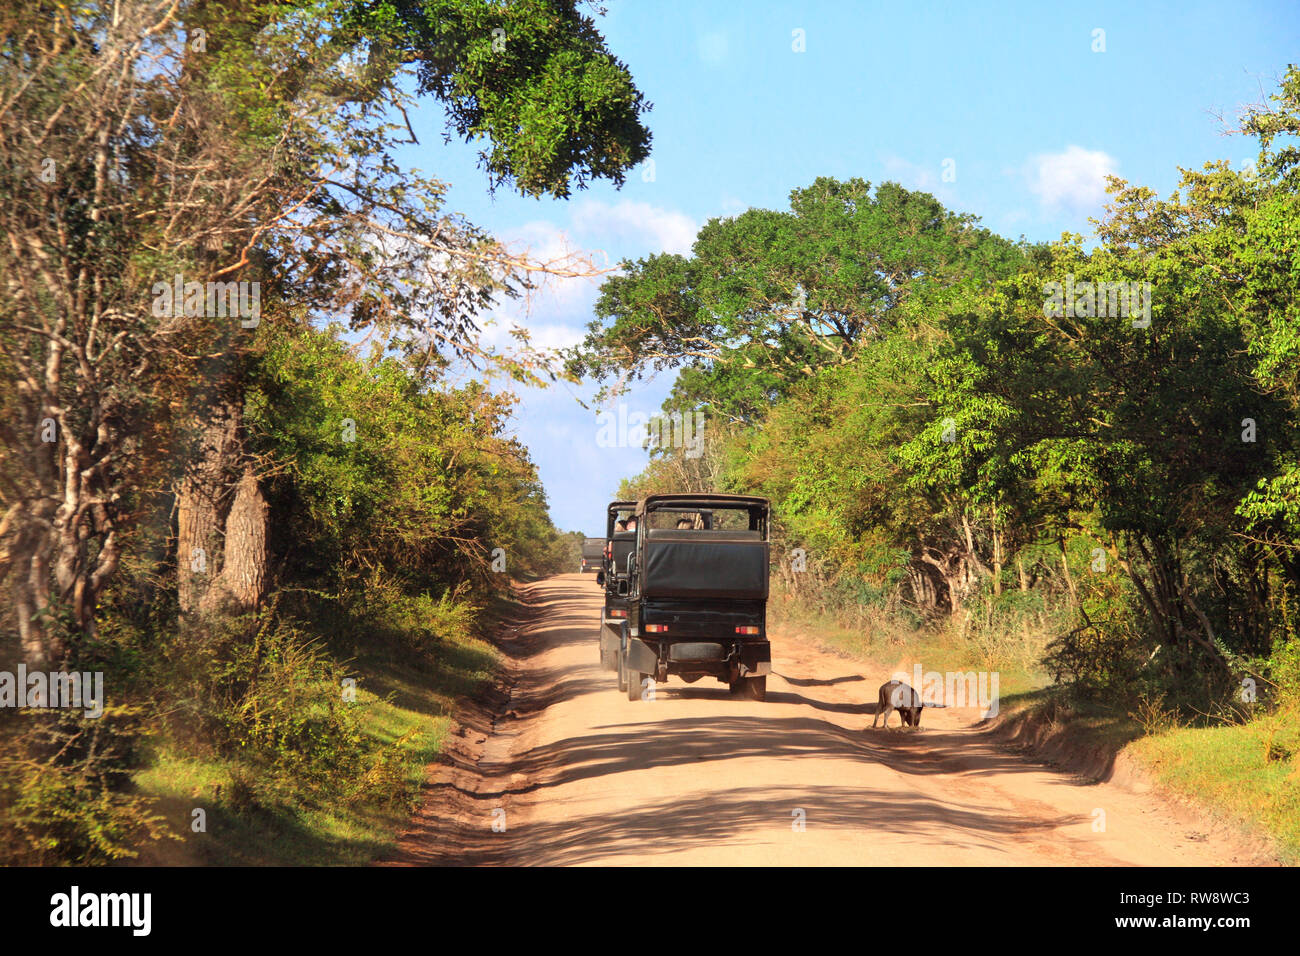 Location de safari dans le parc national de Yala. Les touristes dans les voitures et les sangliers sur la route poussiéreuse. Sri Lanka Banque D'Images